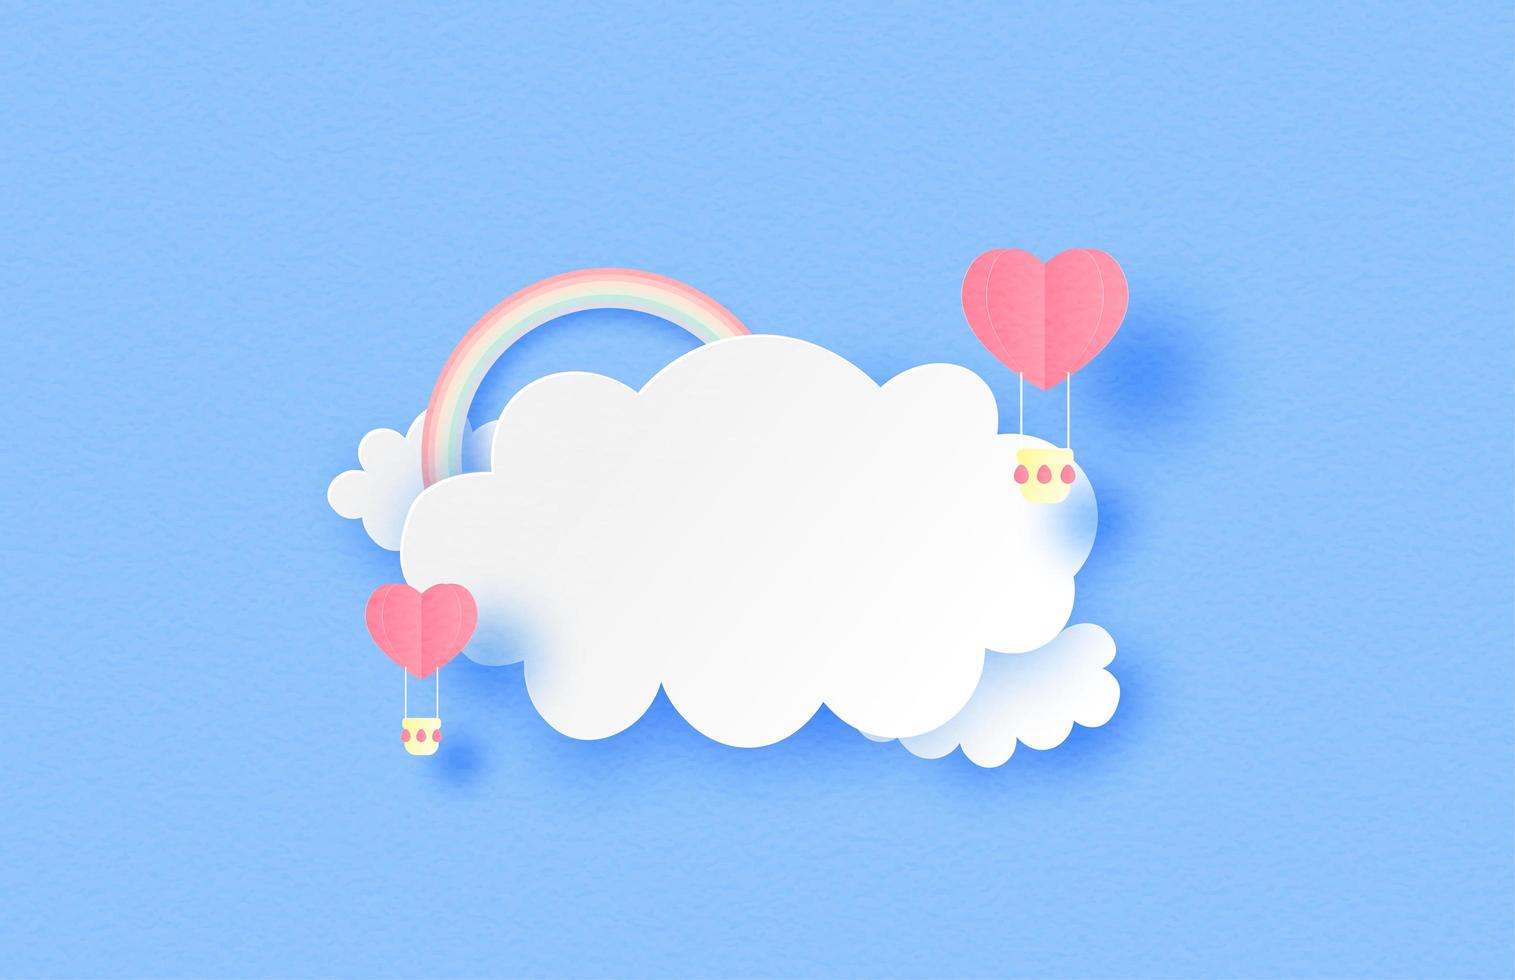 herzförmige Luftballons in Wolken mit Regenbogen vektor